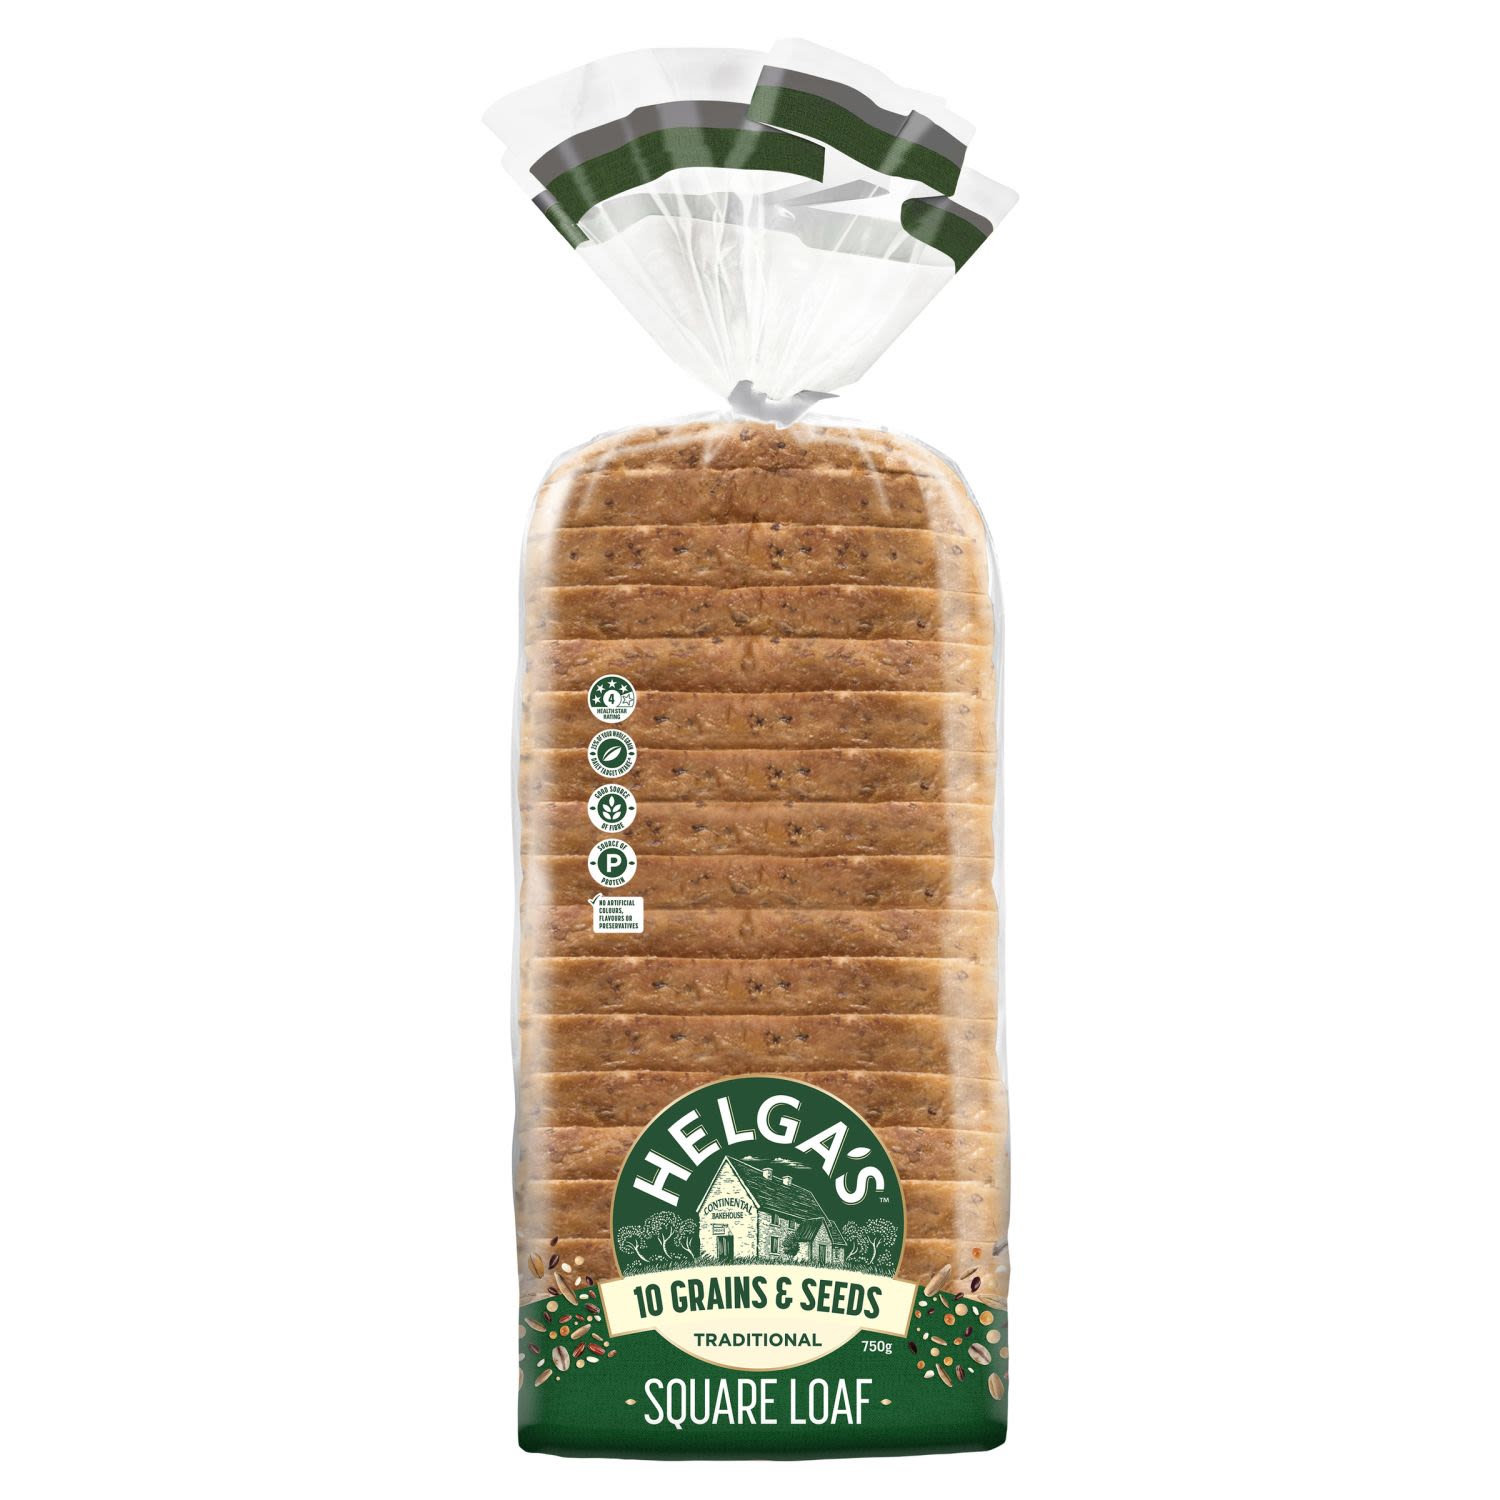 Helga's Square Loaf 10 Grains & Seeds, 750 Gram